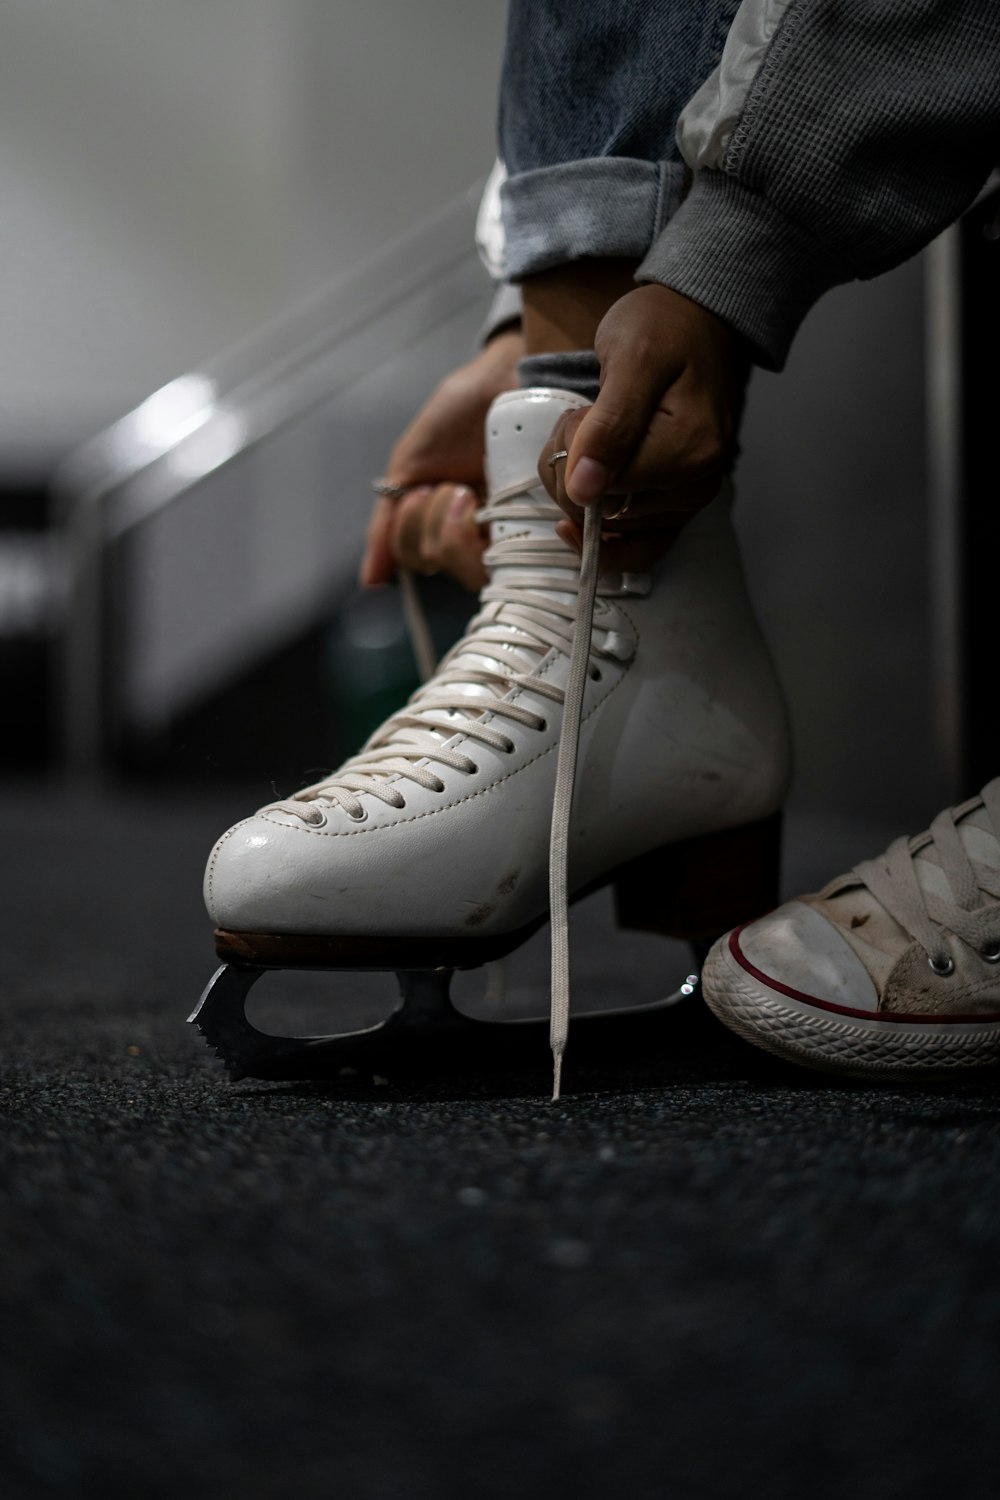 흰색 가죽 아이스 스케이트를 입고 있는 사람